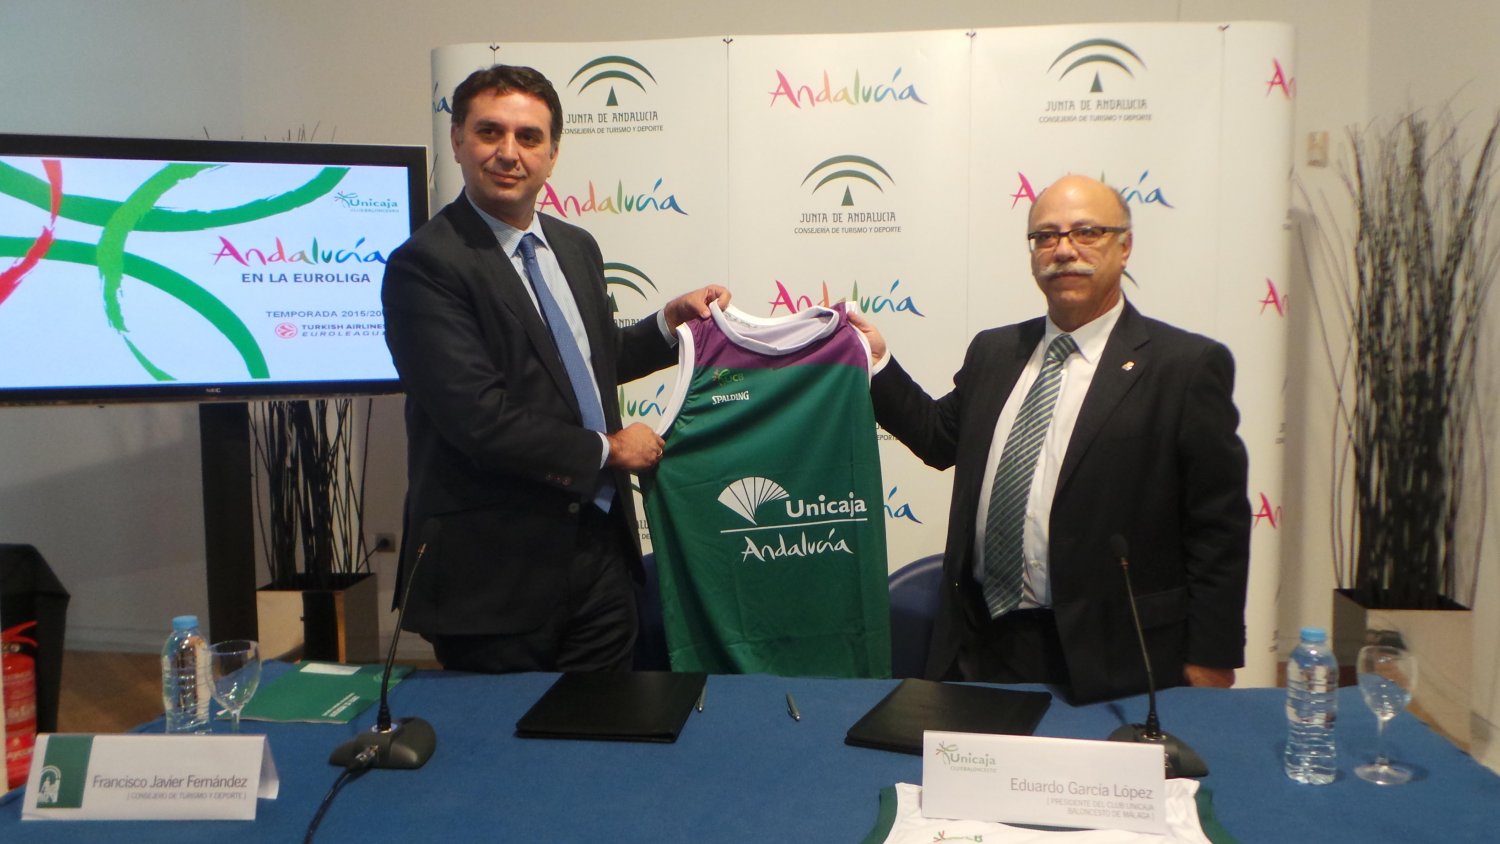 Junta y Unicaja se unen para mostrar el destino turístico de Andalucía durante la Euroliga